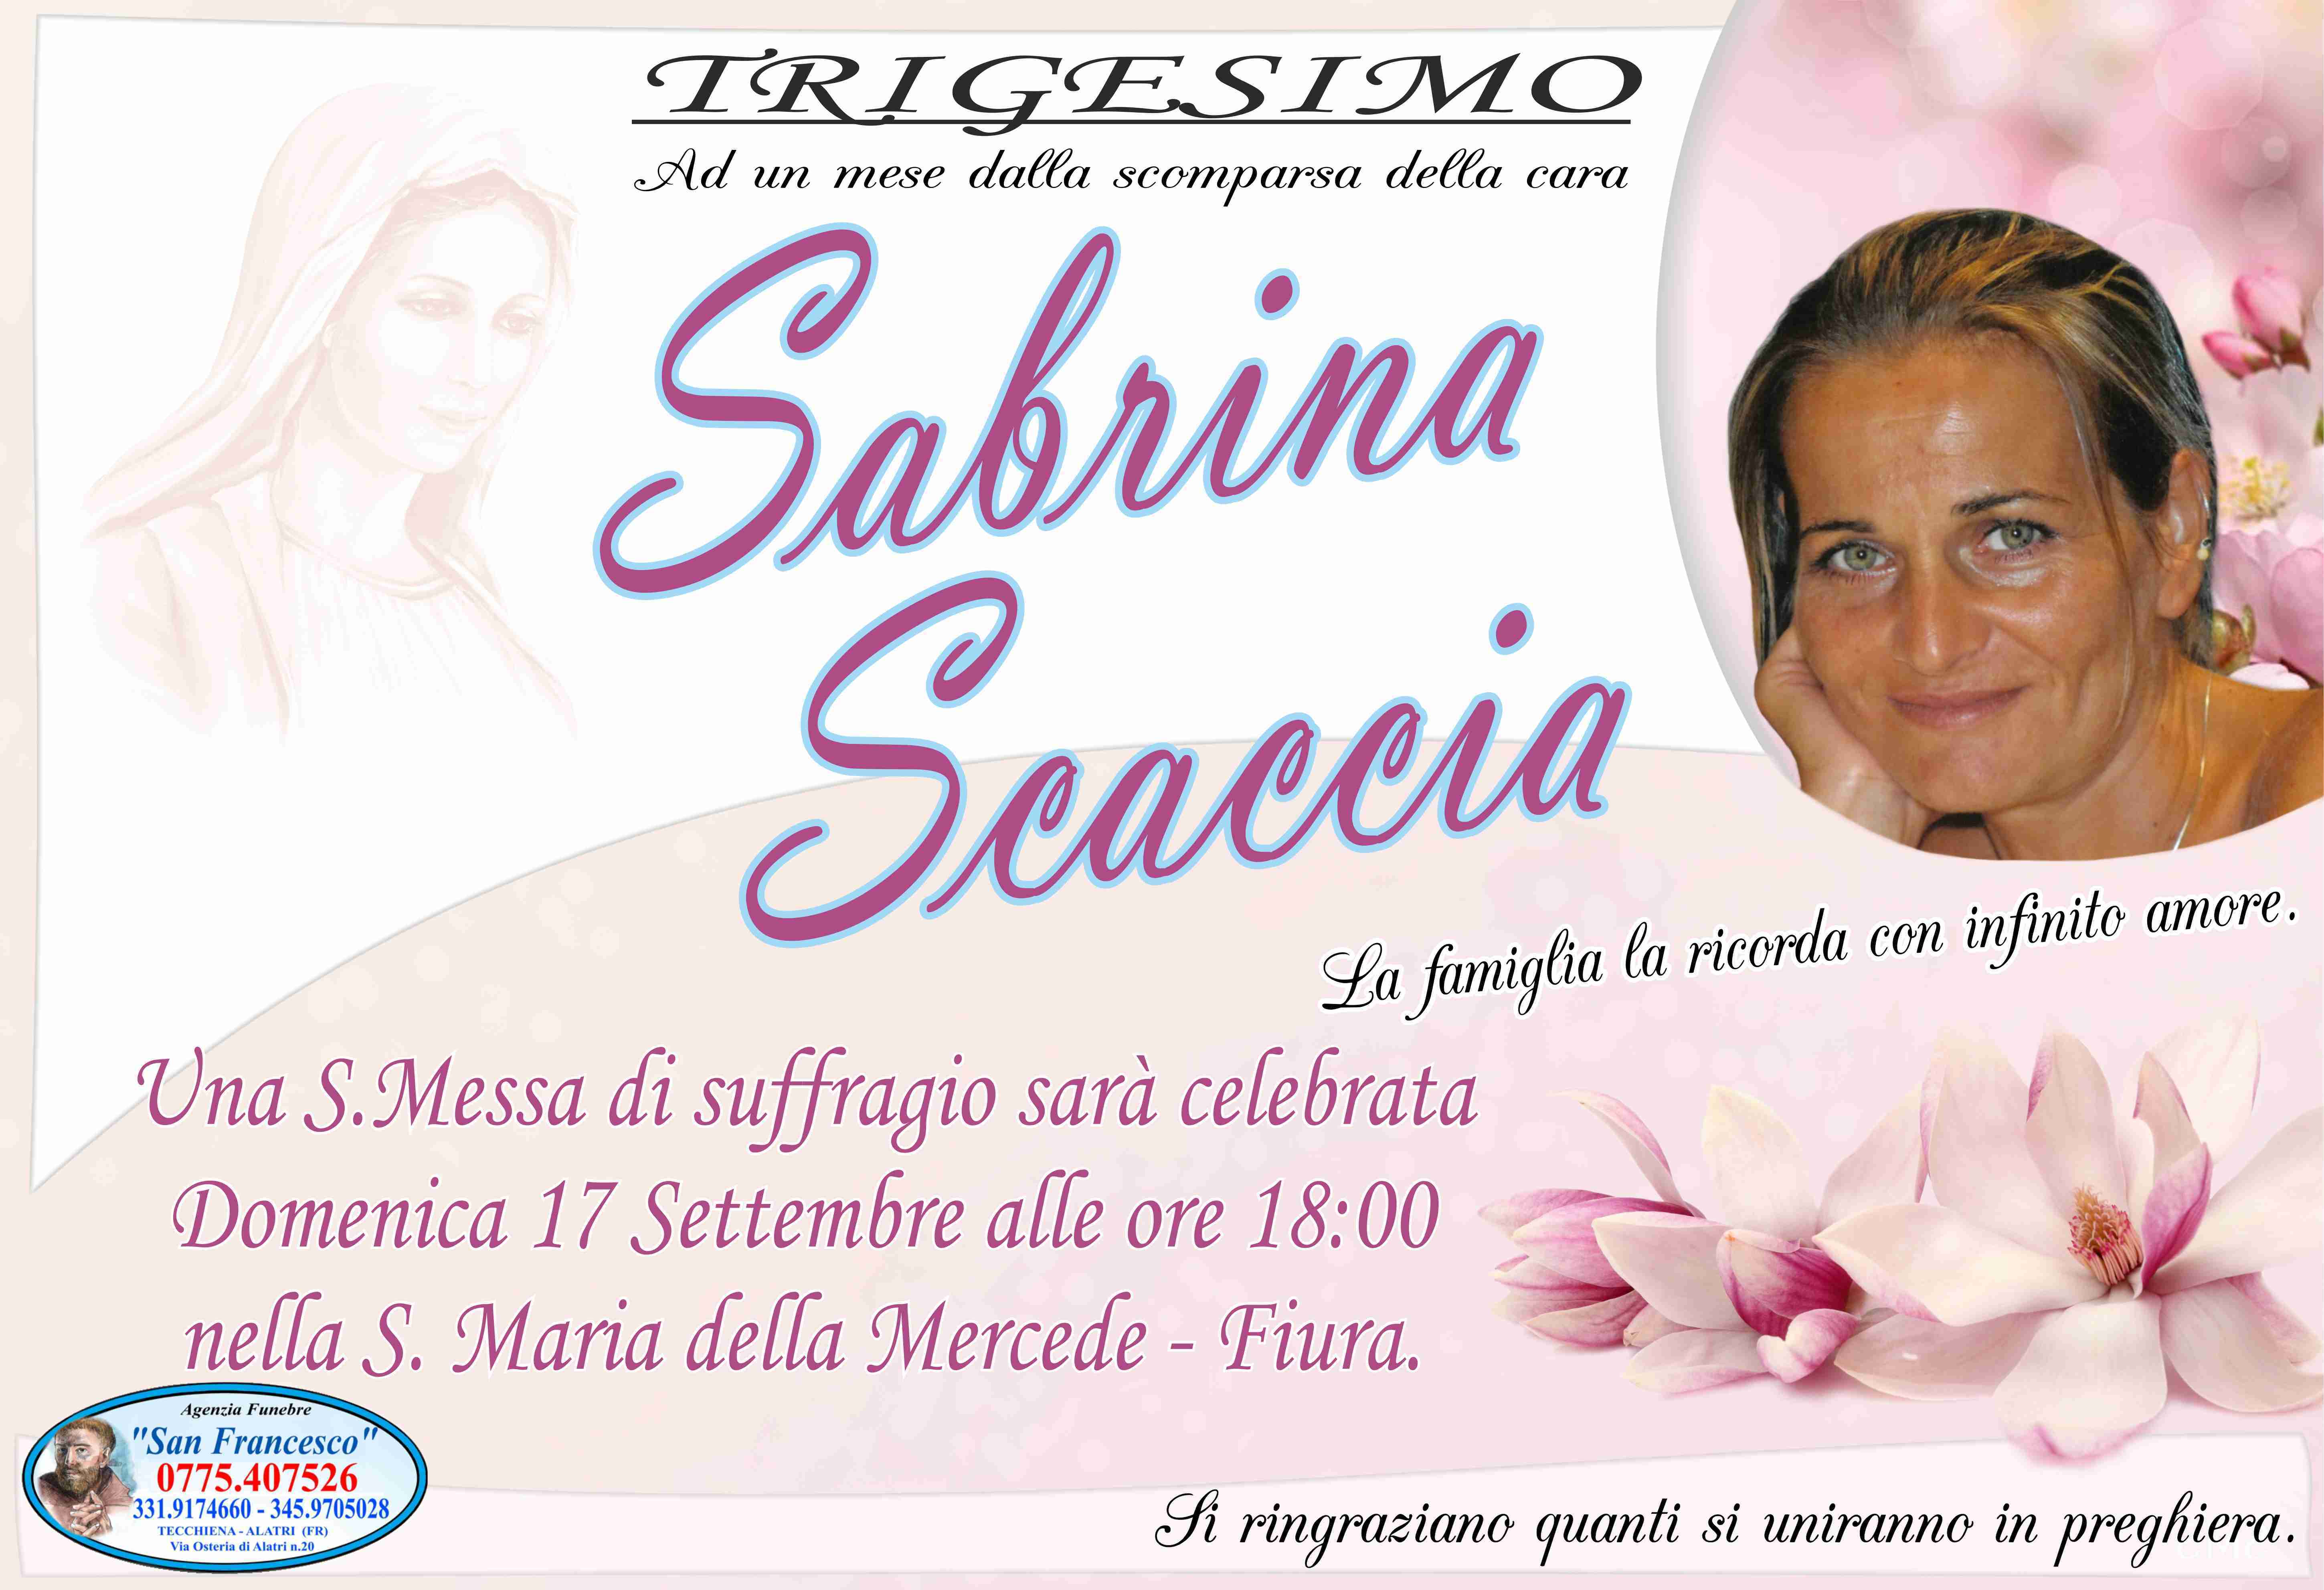 Sabrina Scaccia